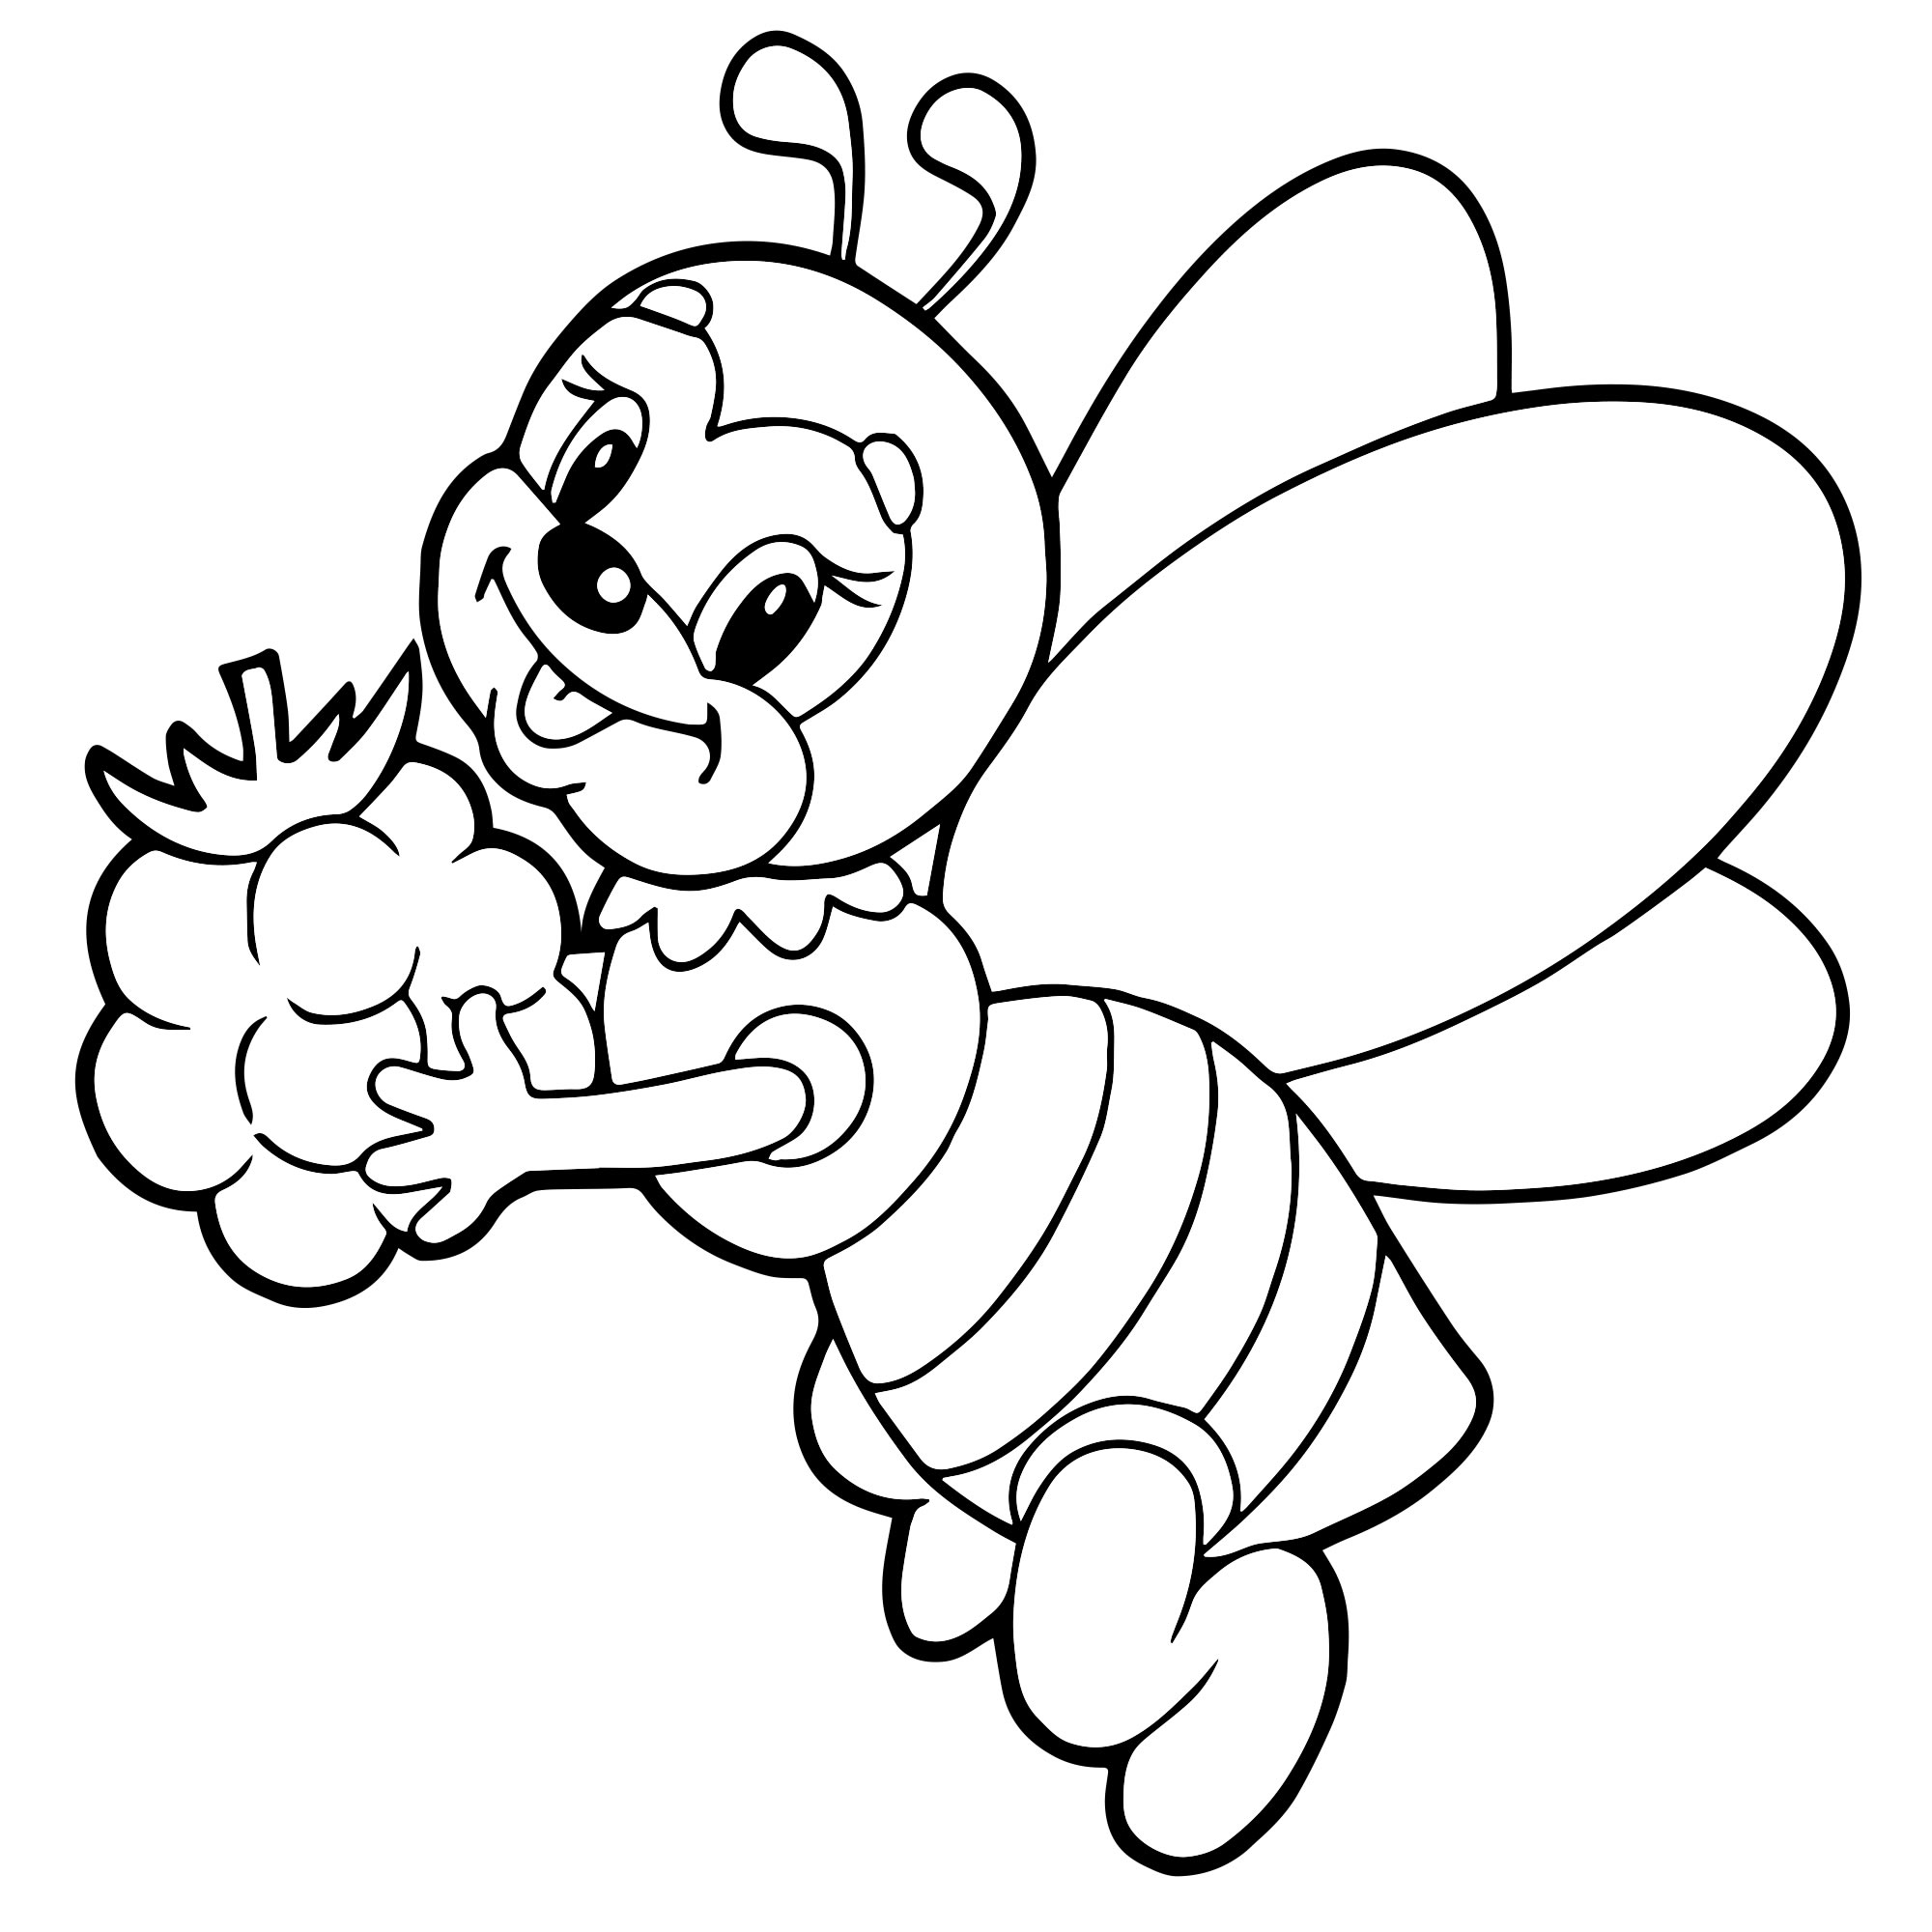 Раскраска симбочка распечатать. Пчела раскраска. Пчела раскраска для детей. Пчелка раскраска для малышей. Раскраска пчёлка для детей.